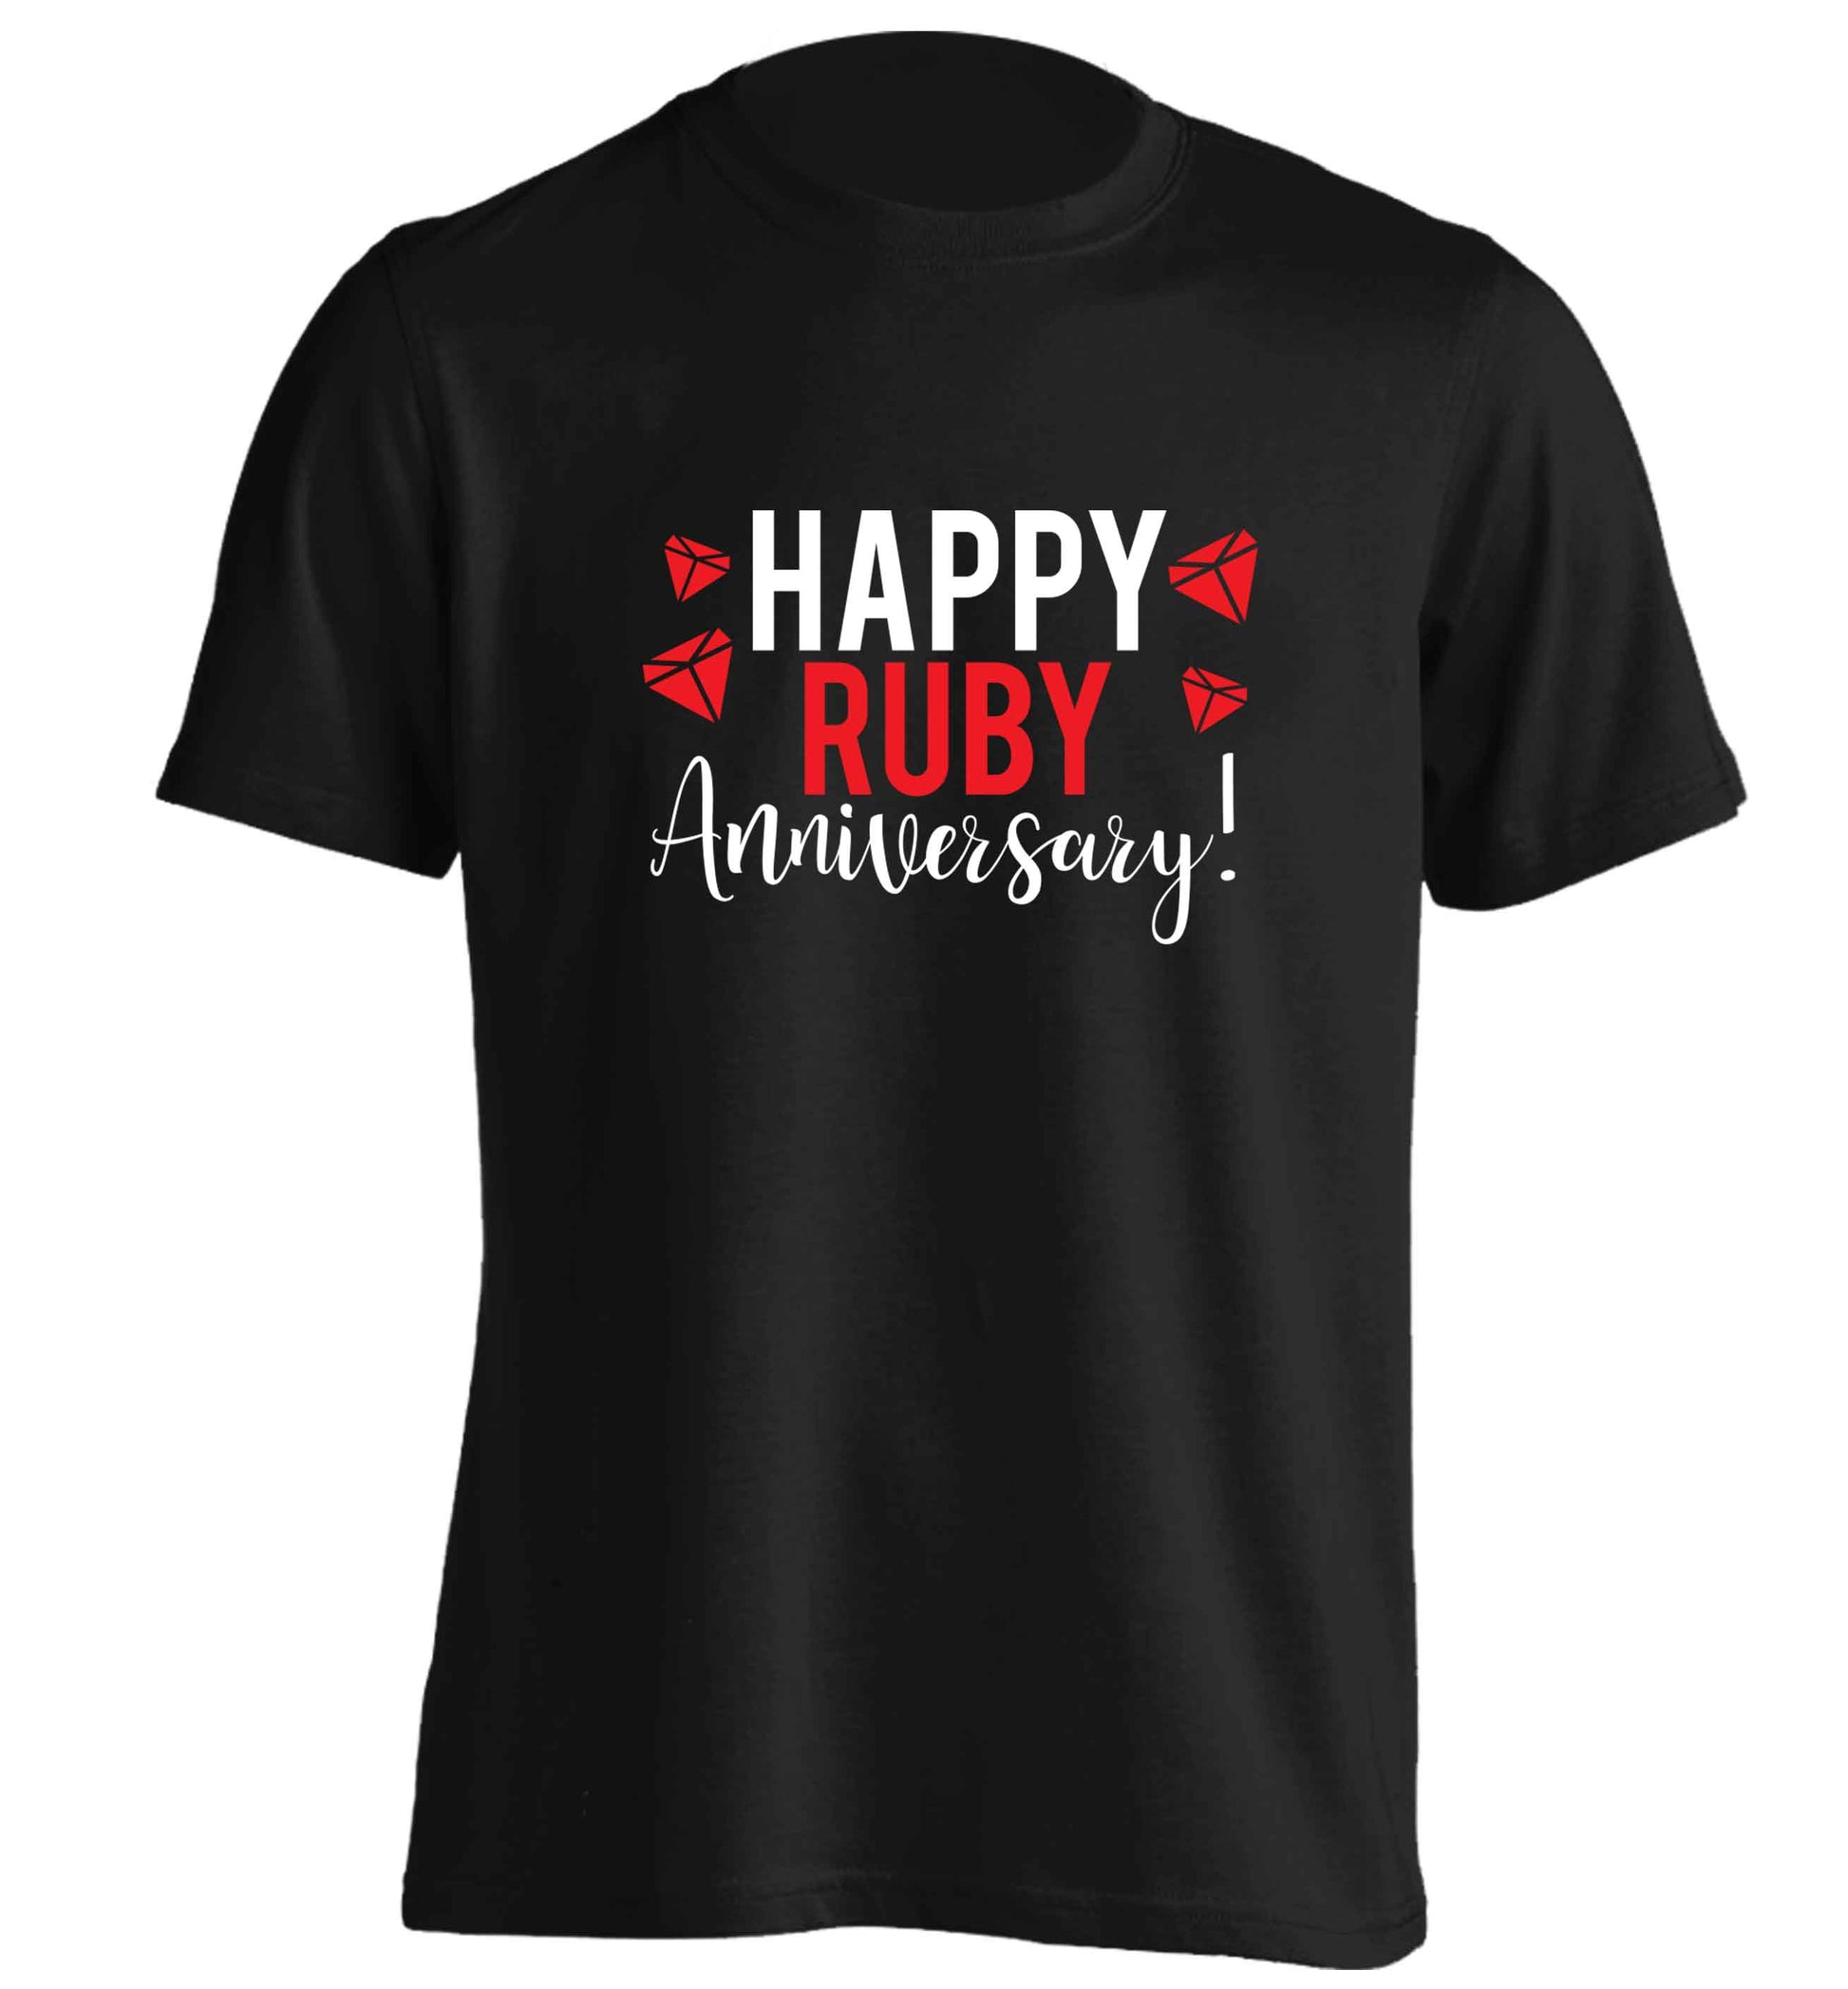 Happy ruby anniversary! adults unisex black Tshirt 2XL